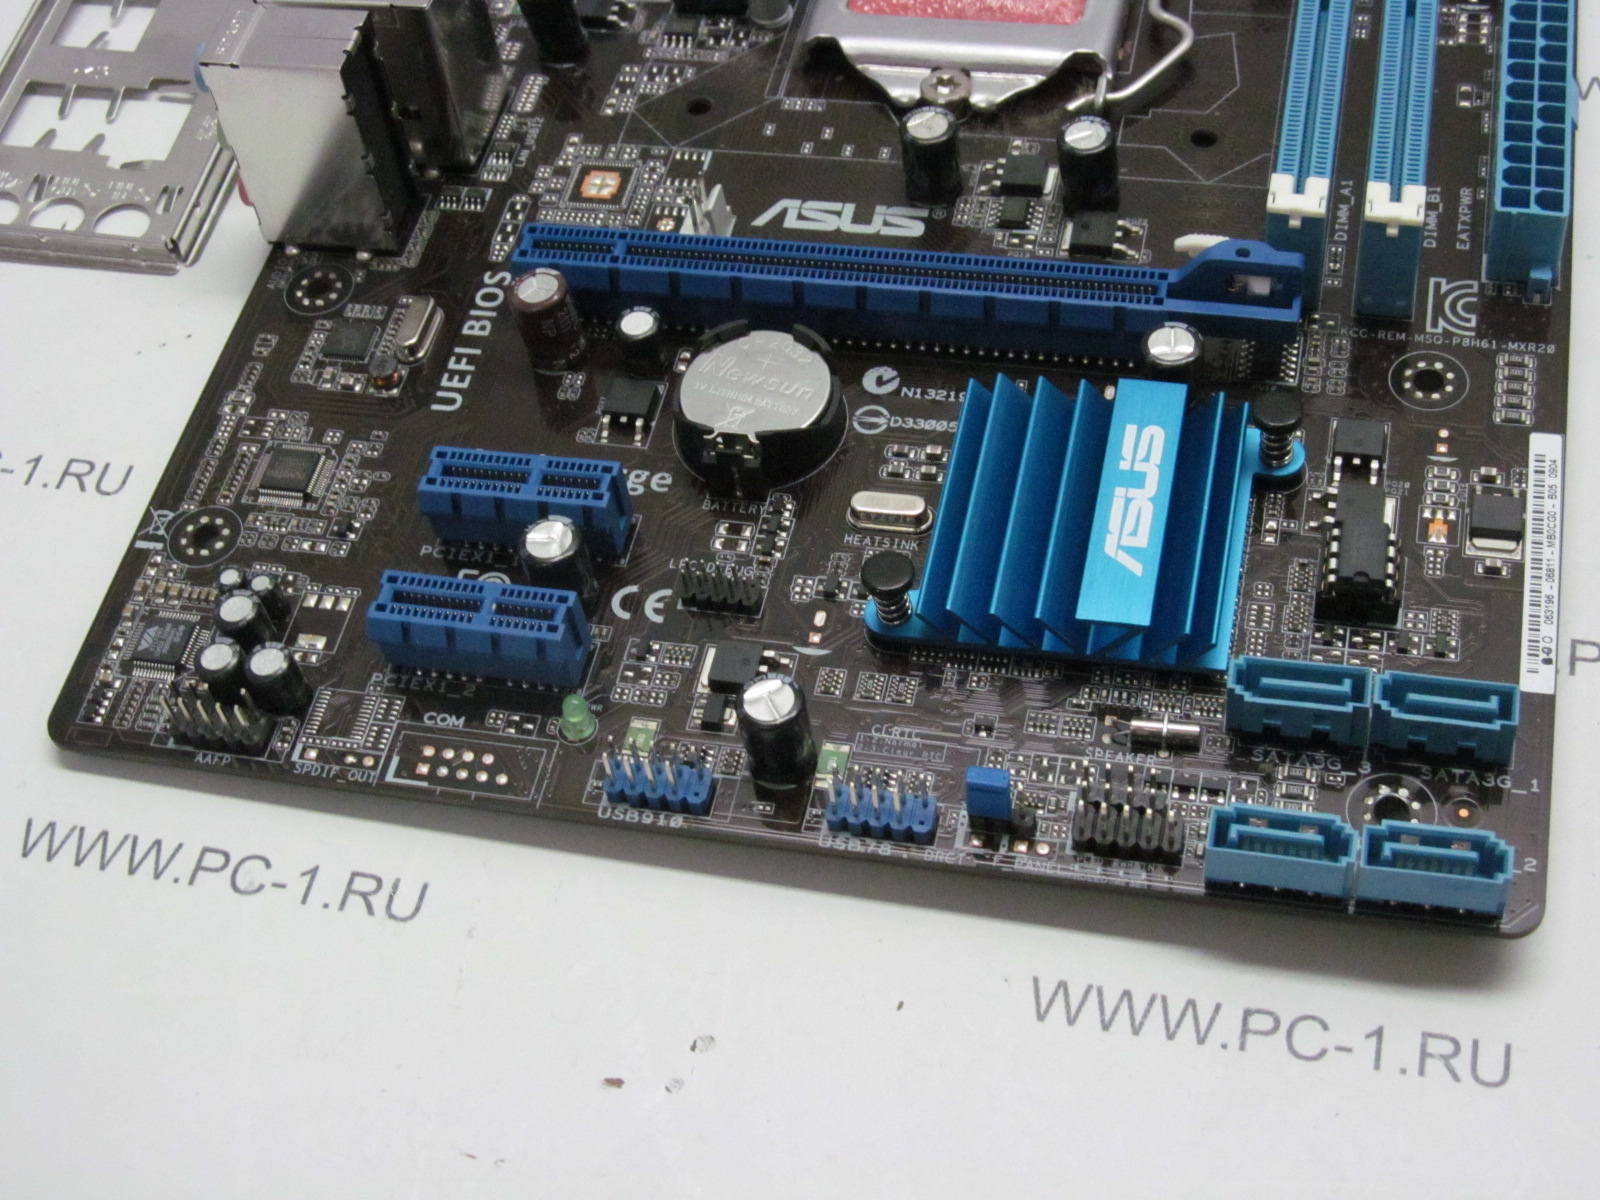 Материнская плата MB ASUS P8H61-MX R2.0 /Socket 1155 /PCI-E x16 /2xPCI-E x1 /2xDDR3 /Sound /4xSATA /6xUSB /LAN /VGA /DVI /mATX /Заглушка